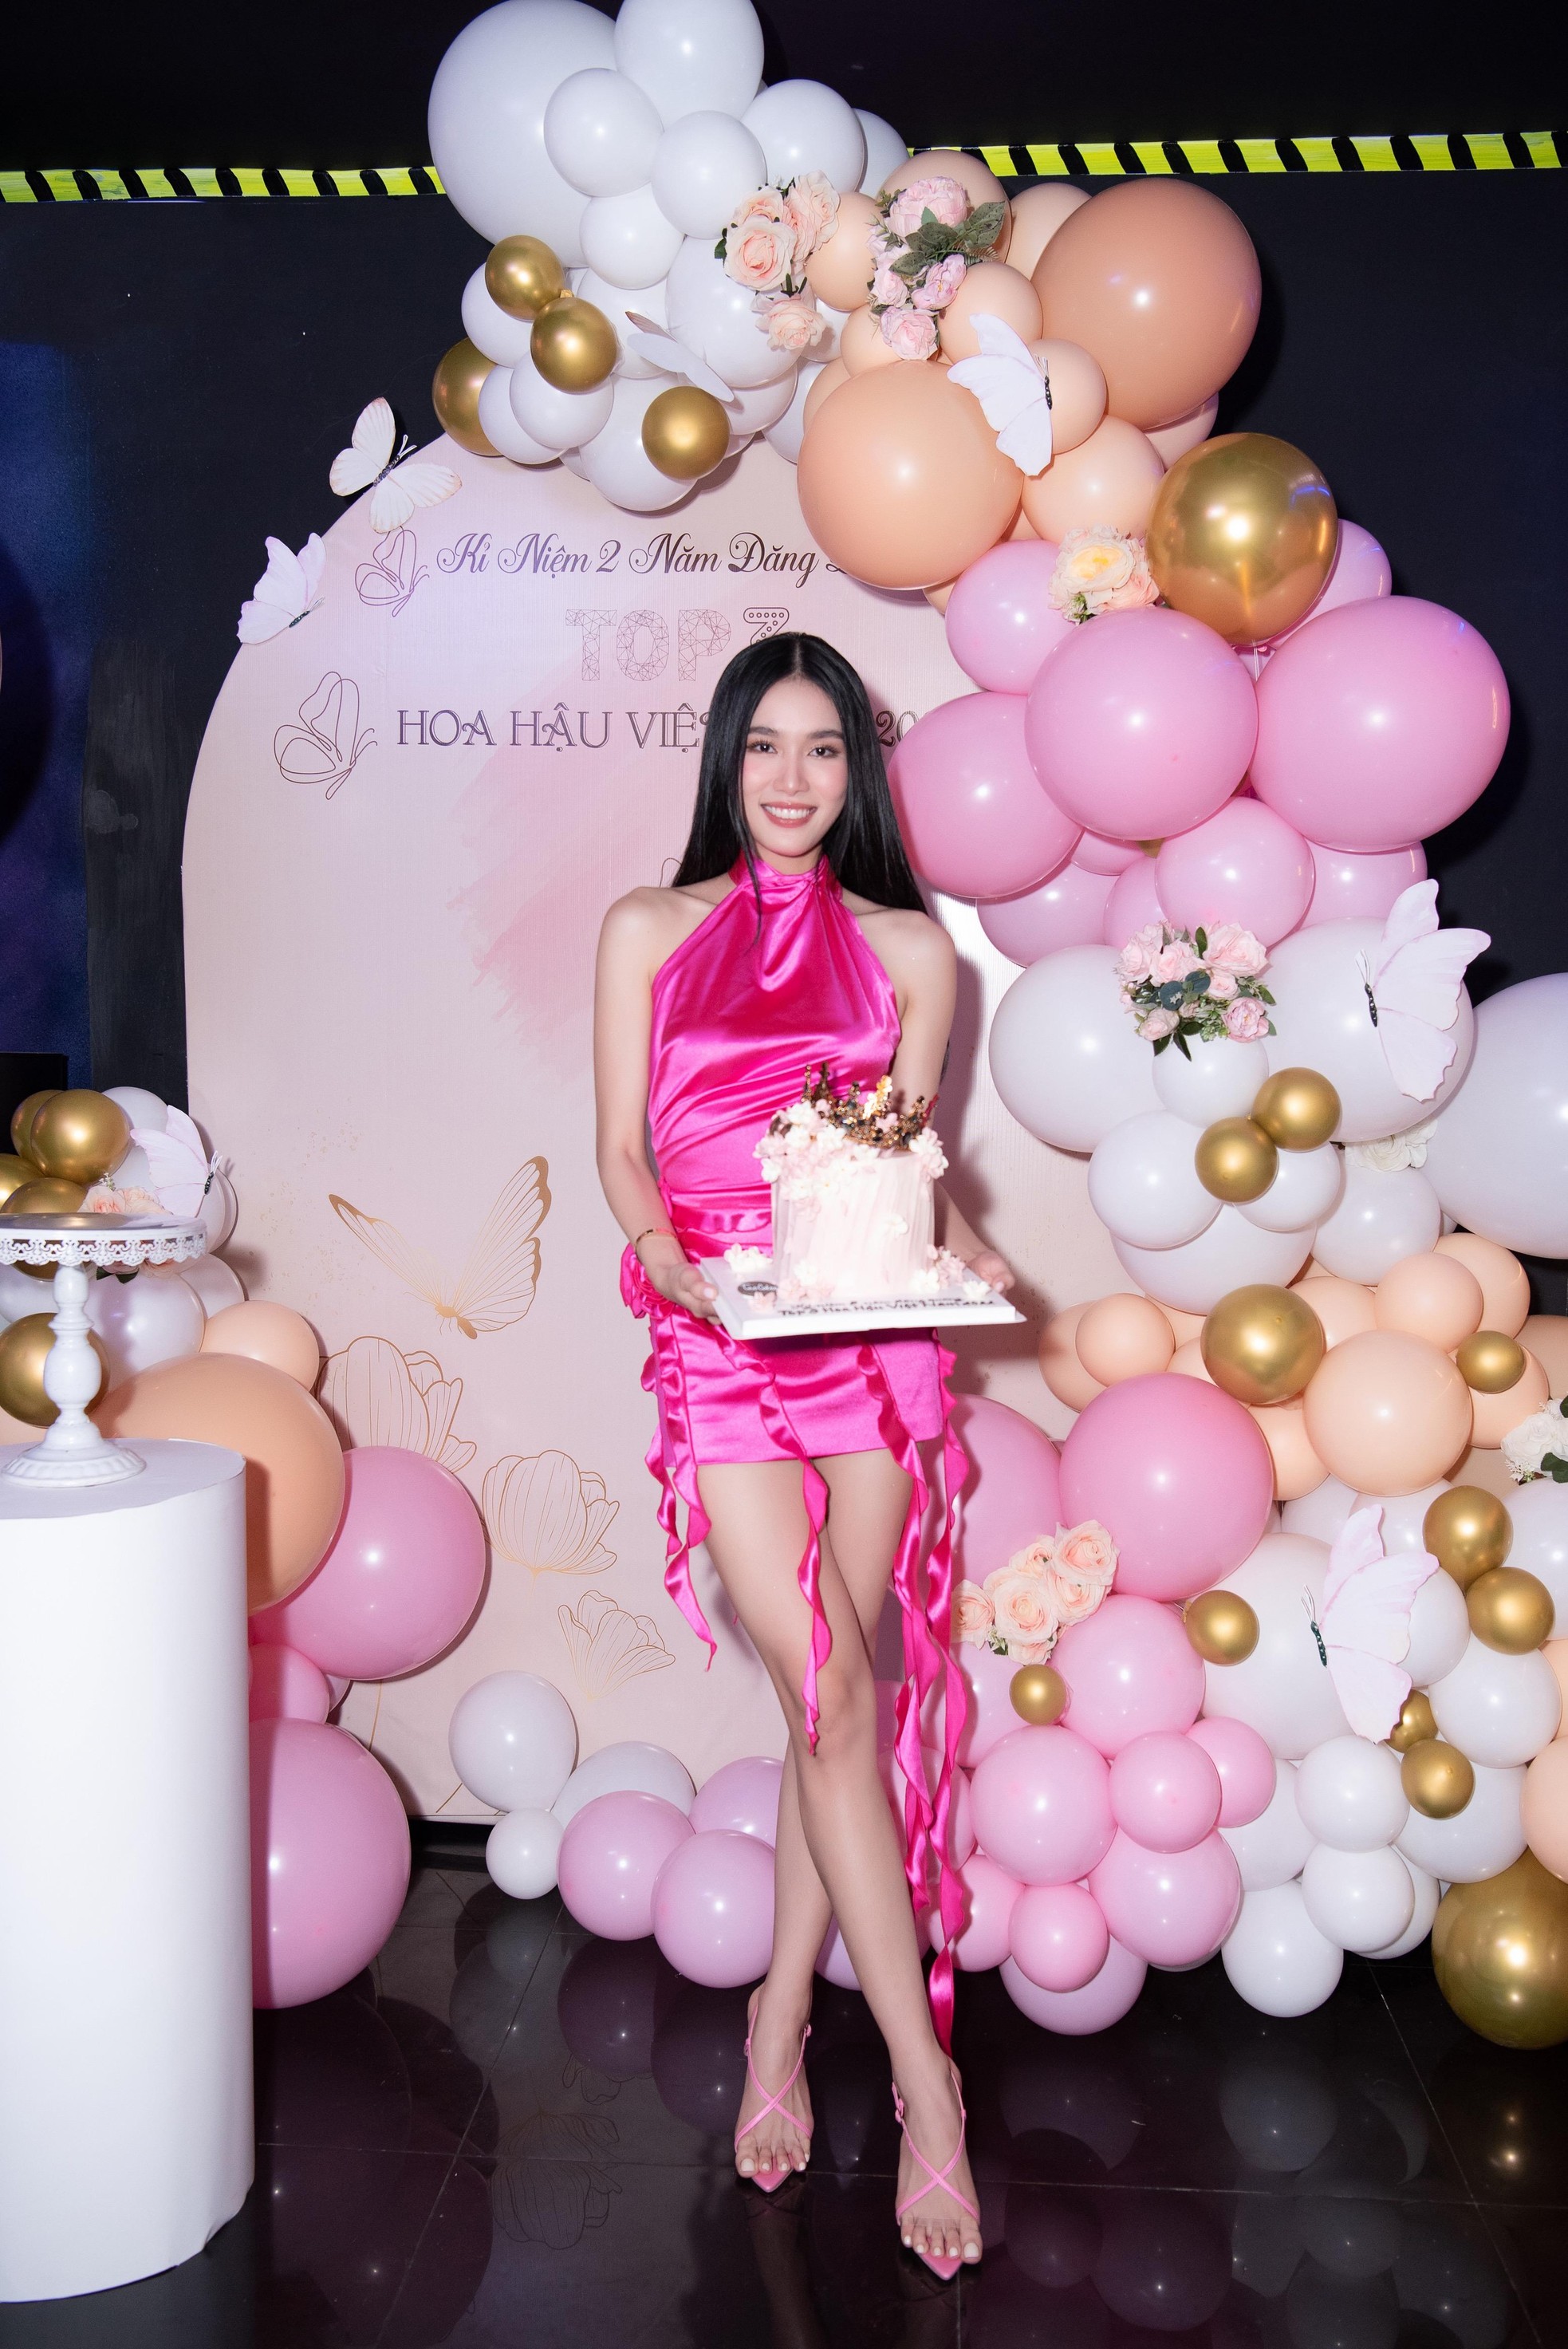 Top 3 Hoa hậu Việt Nam 2020 kỷ niệm 2 năm đăng quang - Ảnh 8.